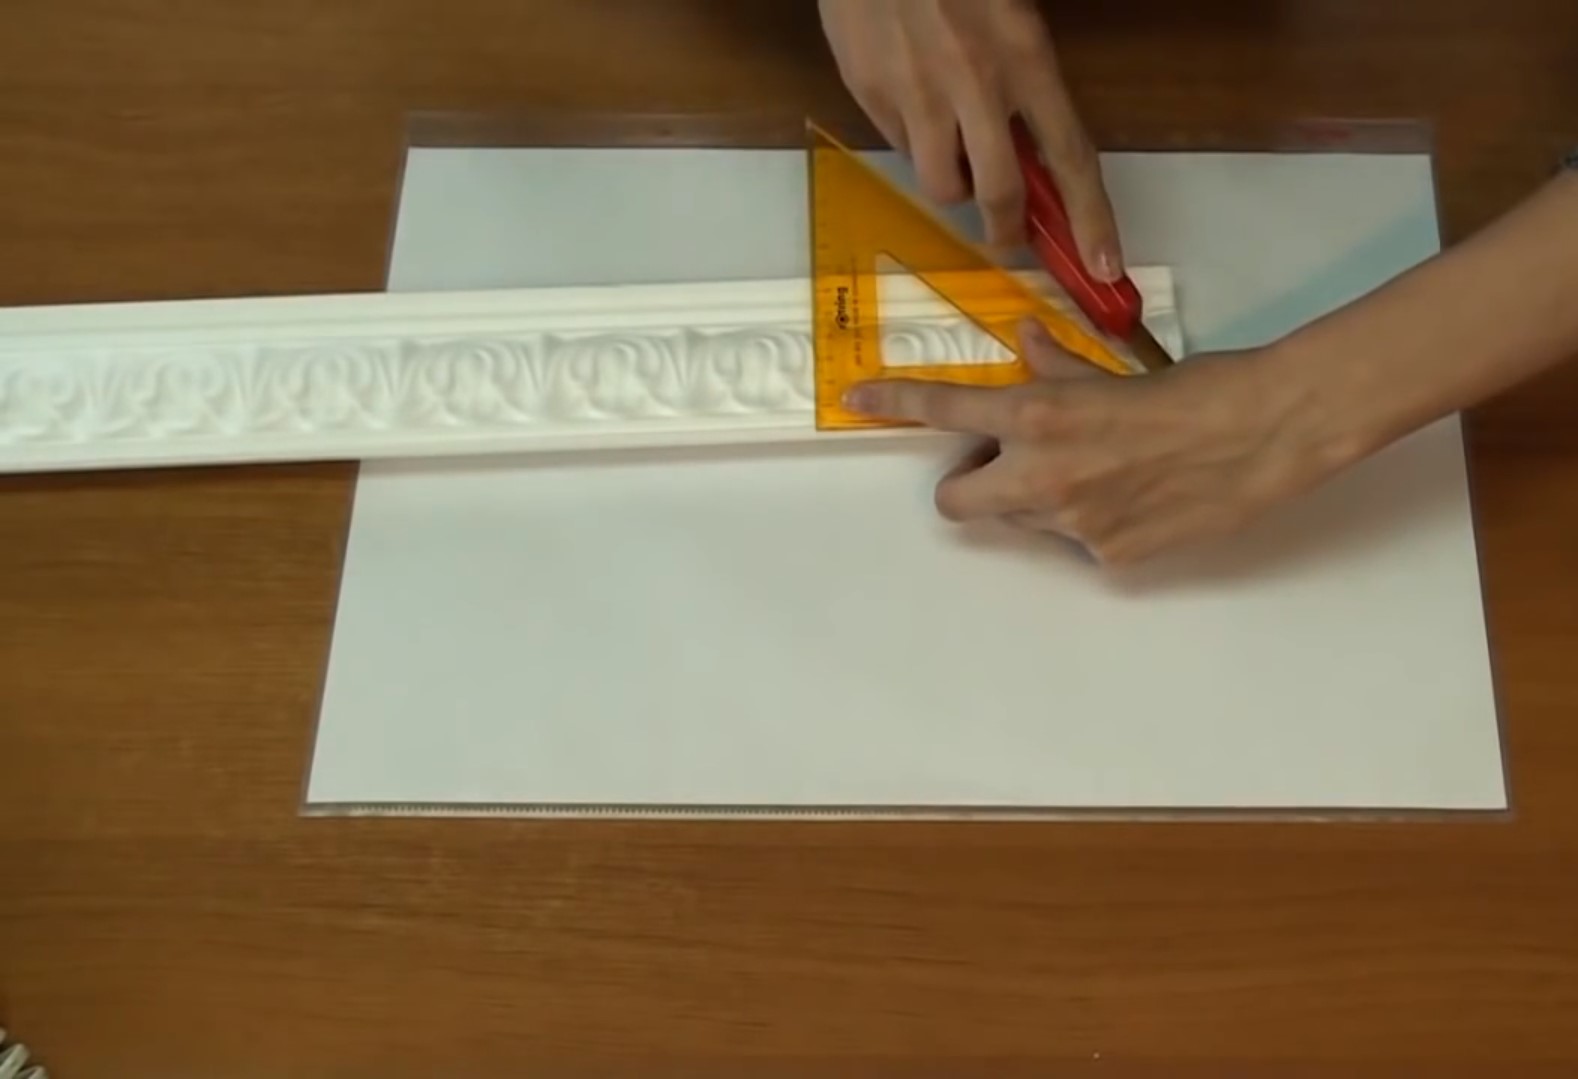 Как вырезать угол на потолочном плинтусе из пенопласта фото пошагово